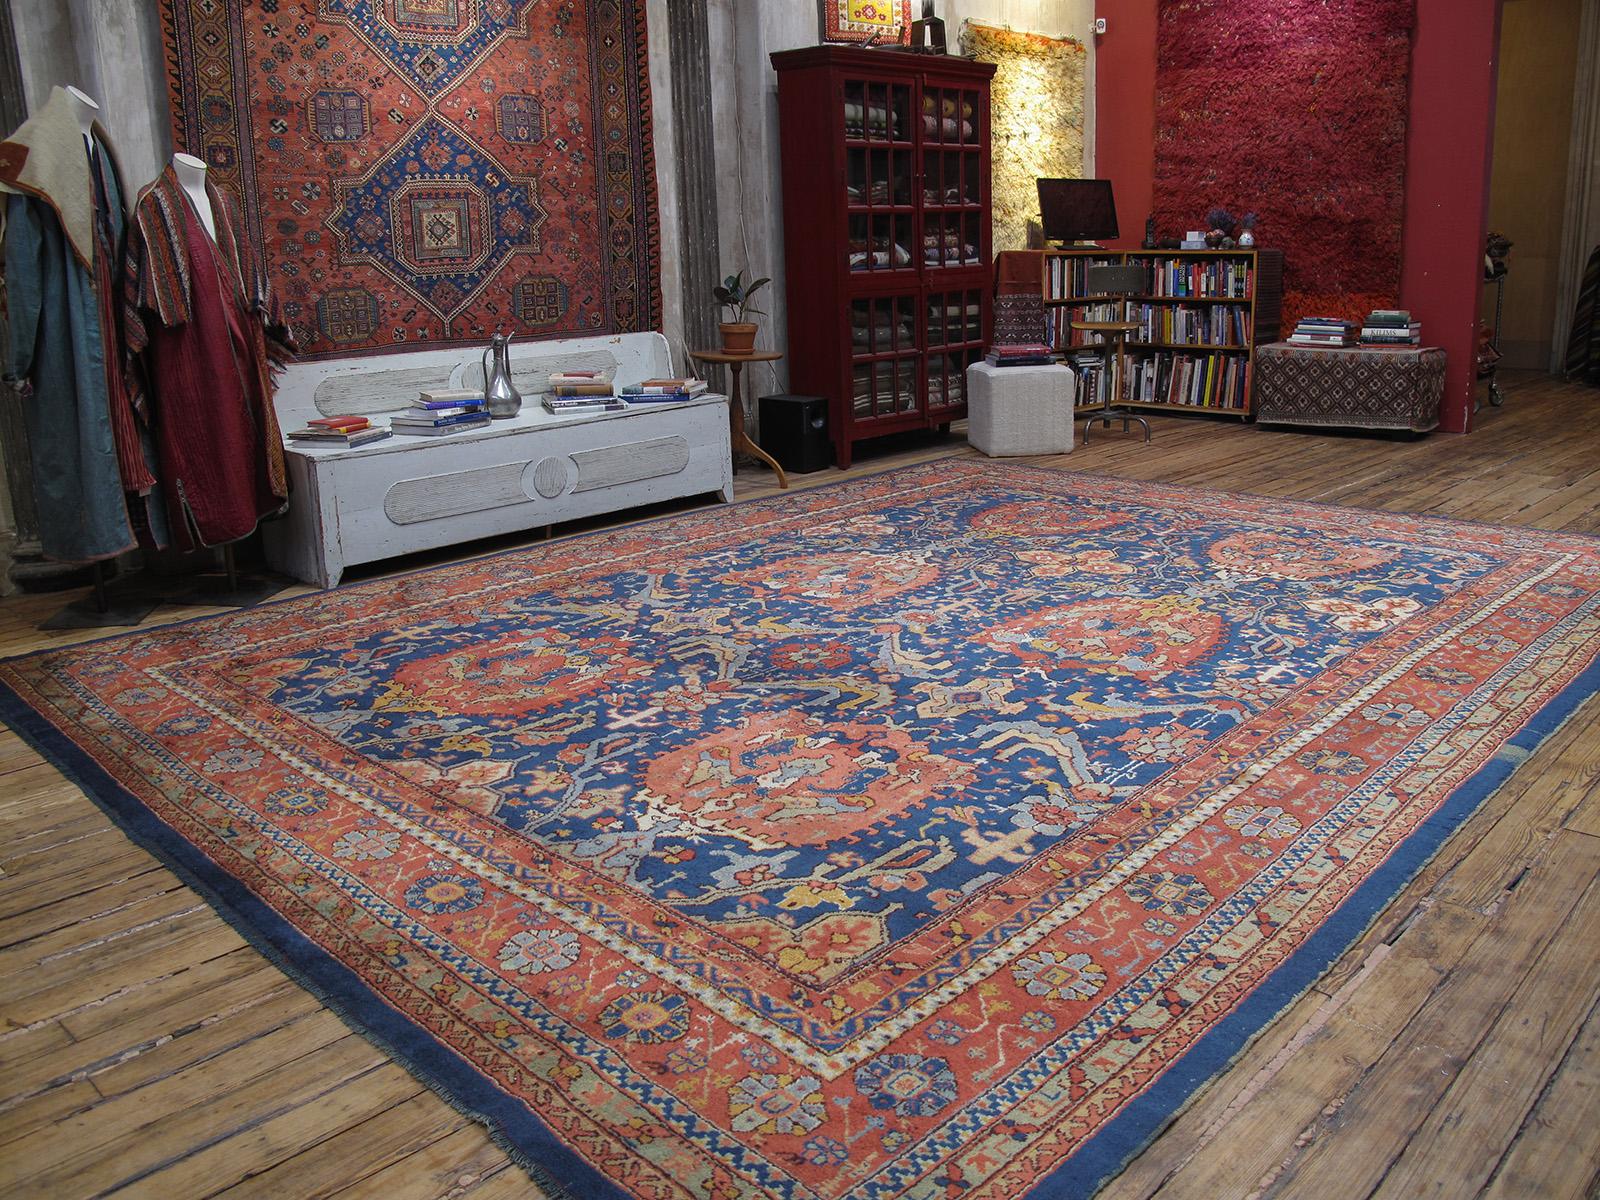 Ein wunderschöner antiker Teppich aus der fruchtbaren Region Oushak in der Westtürkei mit einem bekannten Muster, das mindestens seit dem siebzehnten Jahrhundert bekannt ist. Das Design wird im Teppichhandel oft als 